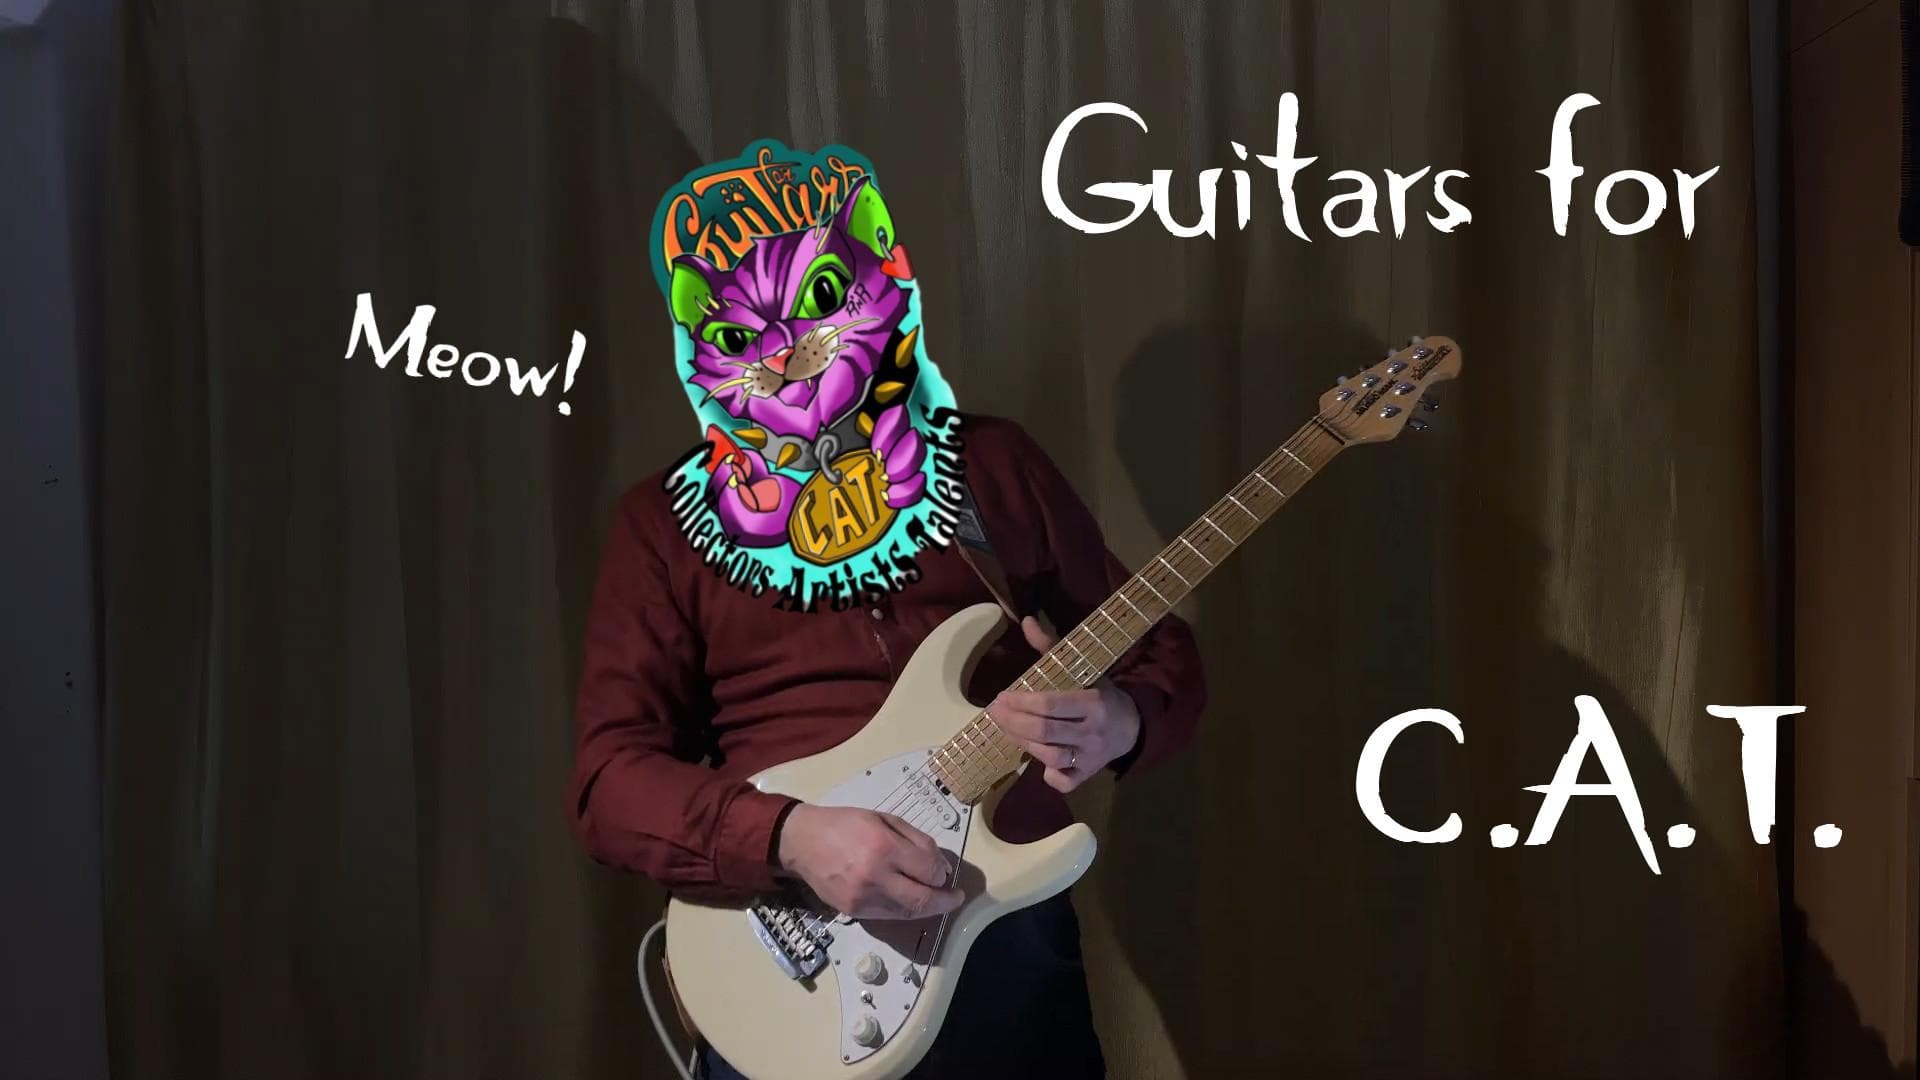 Hajas Tamás (Leisure Guitar) gitárral és a Guitars for C.A.T. macskás logójával.